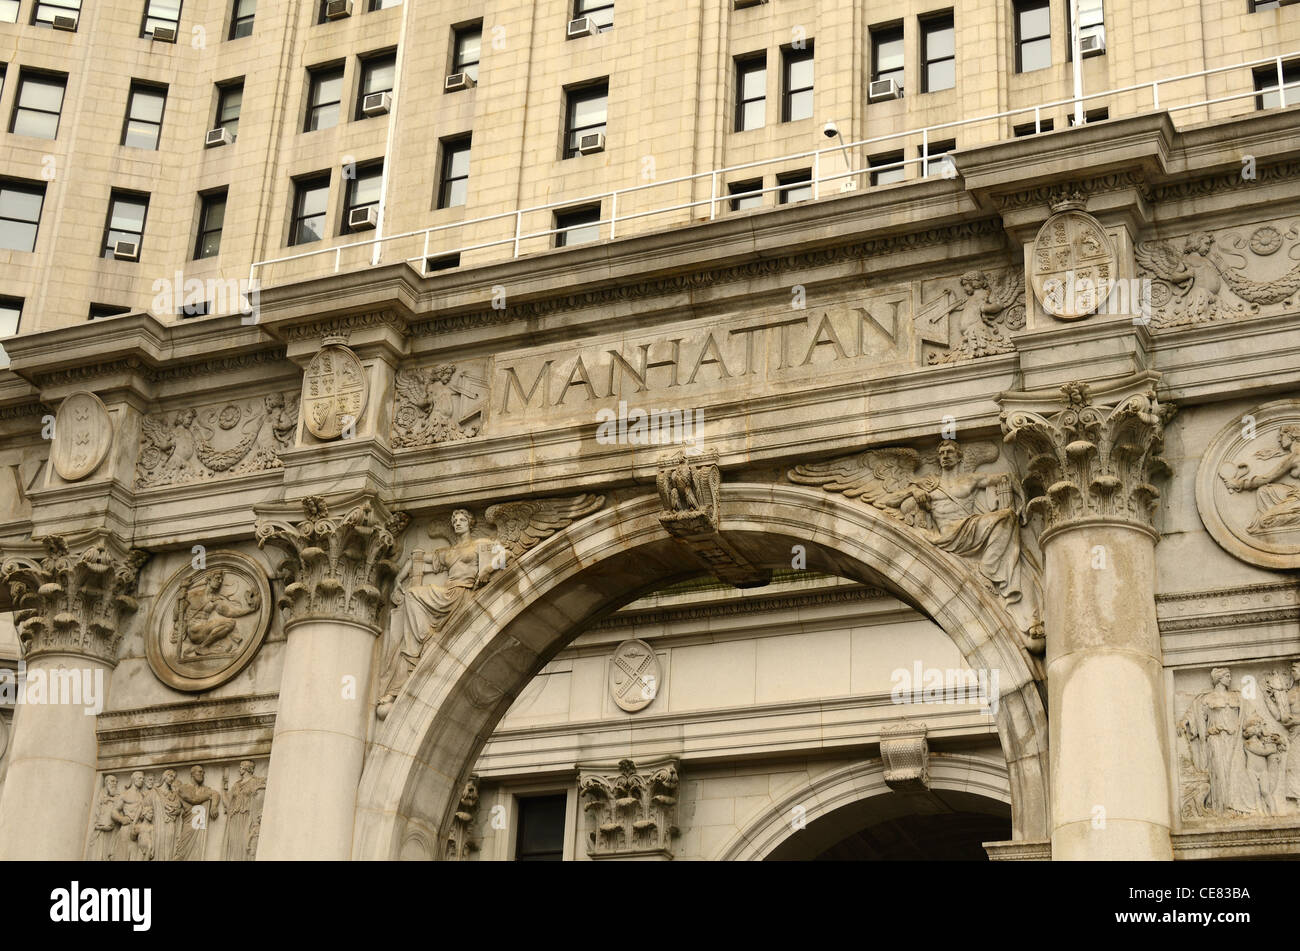 Detalle del edificio municipal de Manhattan, Ciudad de Nueva York. Foto de stock